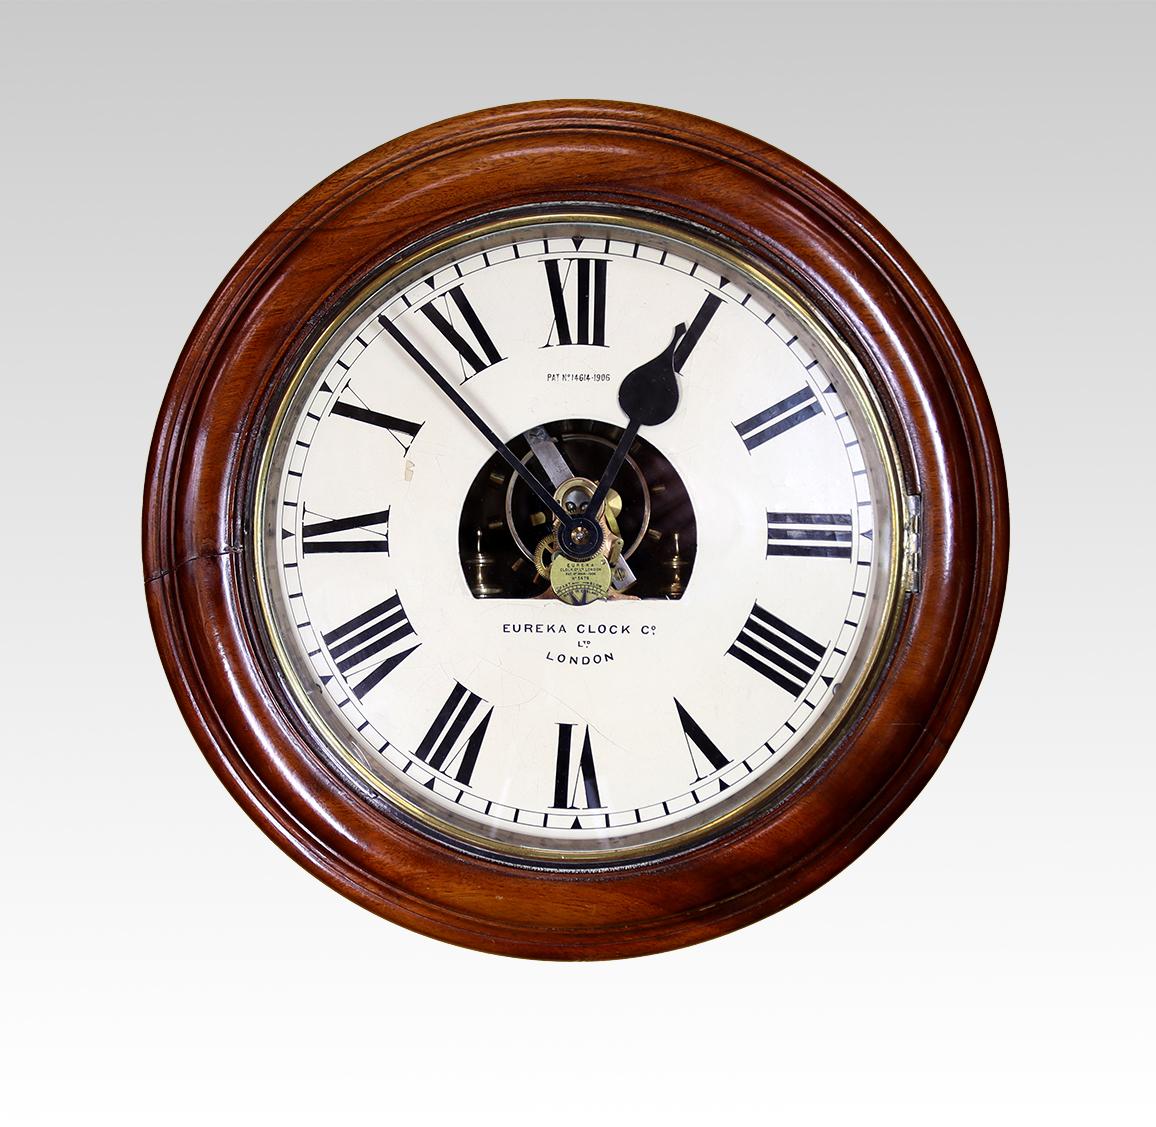 Ein hervorragendes Beispiel für eine Eureka-Wanduhr aus dem Jahr 1911.

Das elektromagnetische Uhrwerk wird durch eine große, langsam schwingende bimetallische Unruh reguliert. Mit der richtigen Batterie läuft diese Uhr für die Dauer der